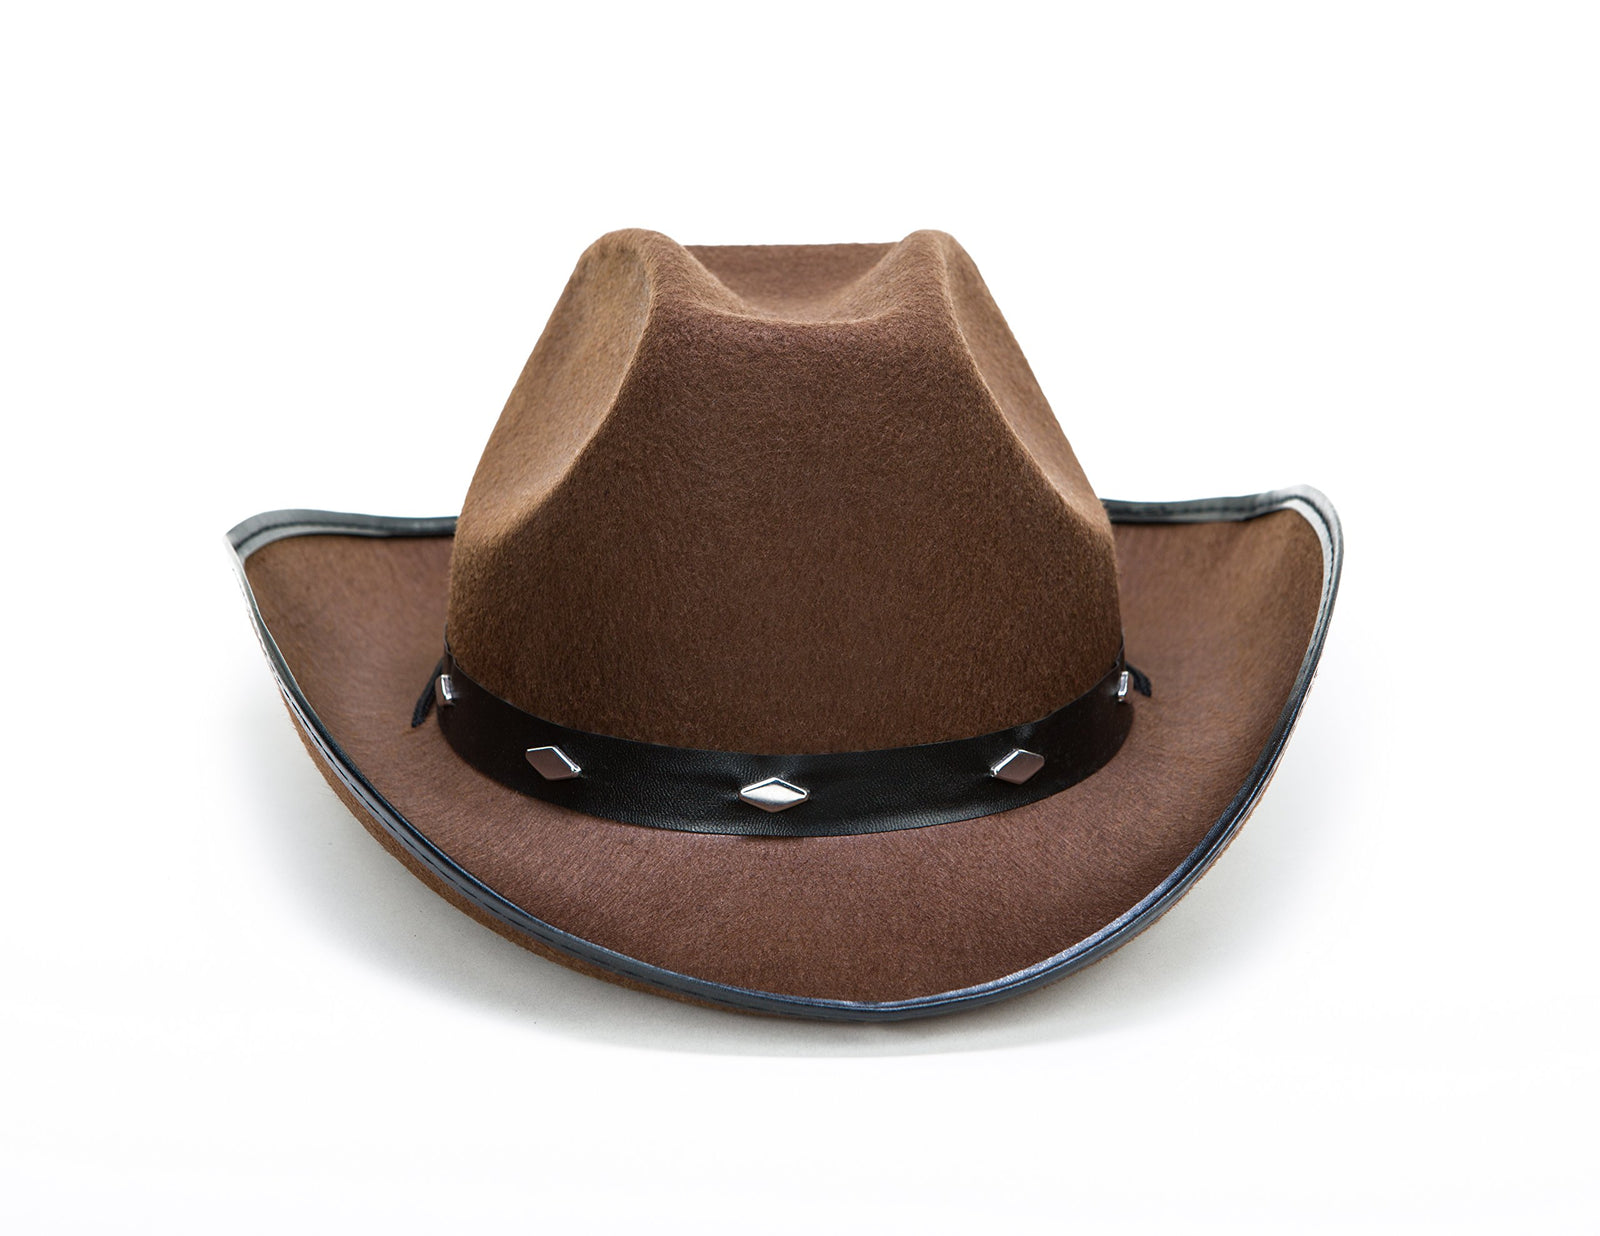 Kangaroo Cowboy Hat